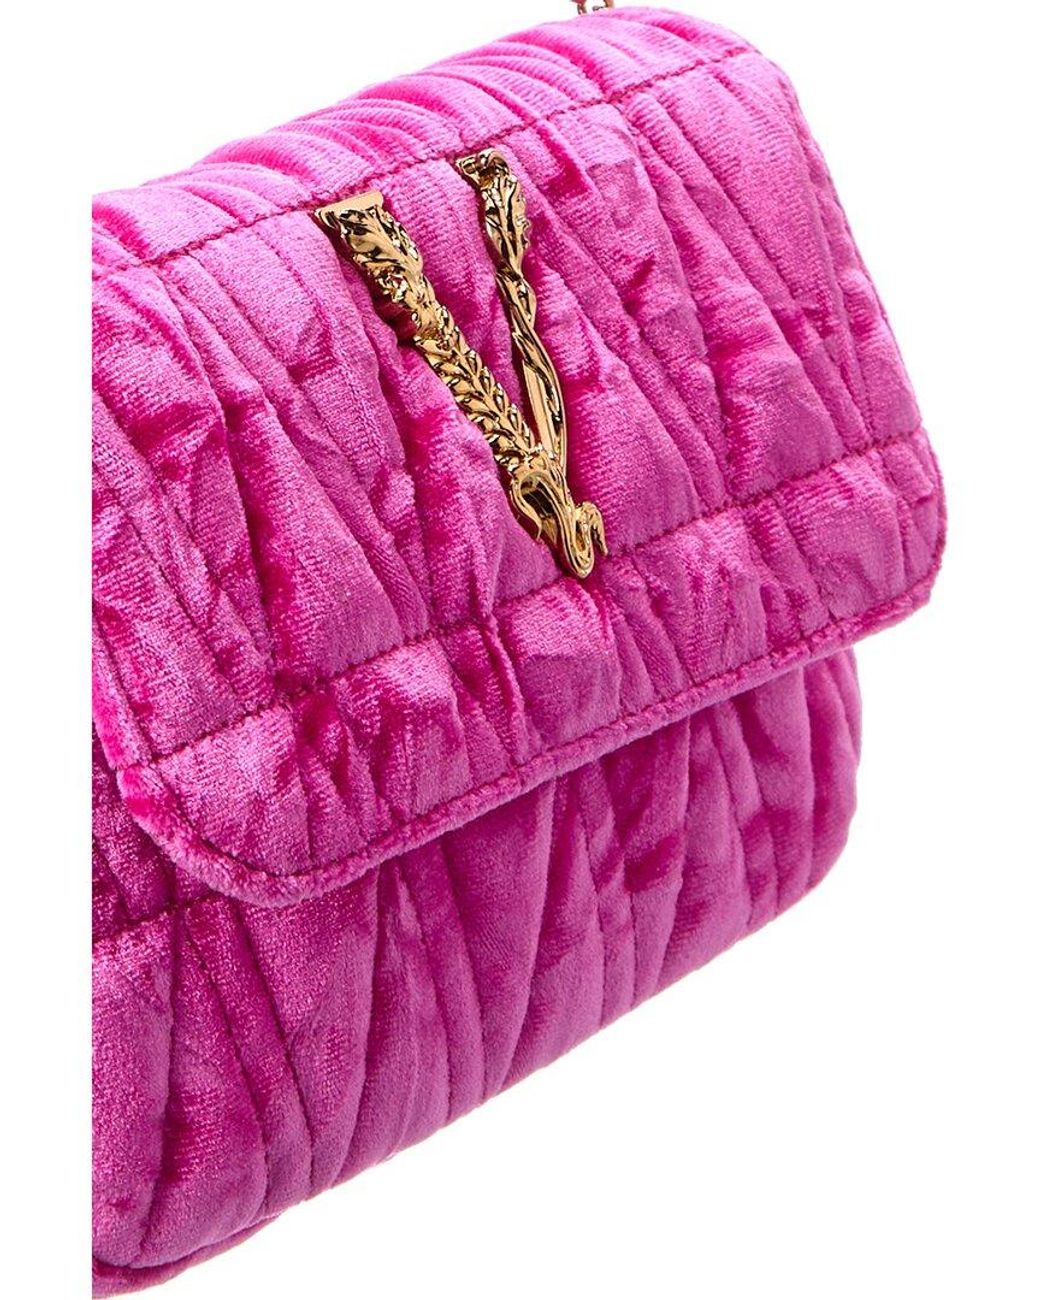 Versace Woman Fuchsia Velvet Virtus Shoulder Bag 